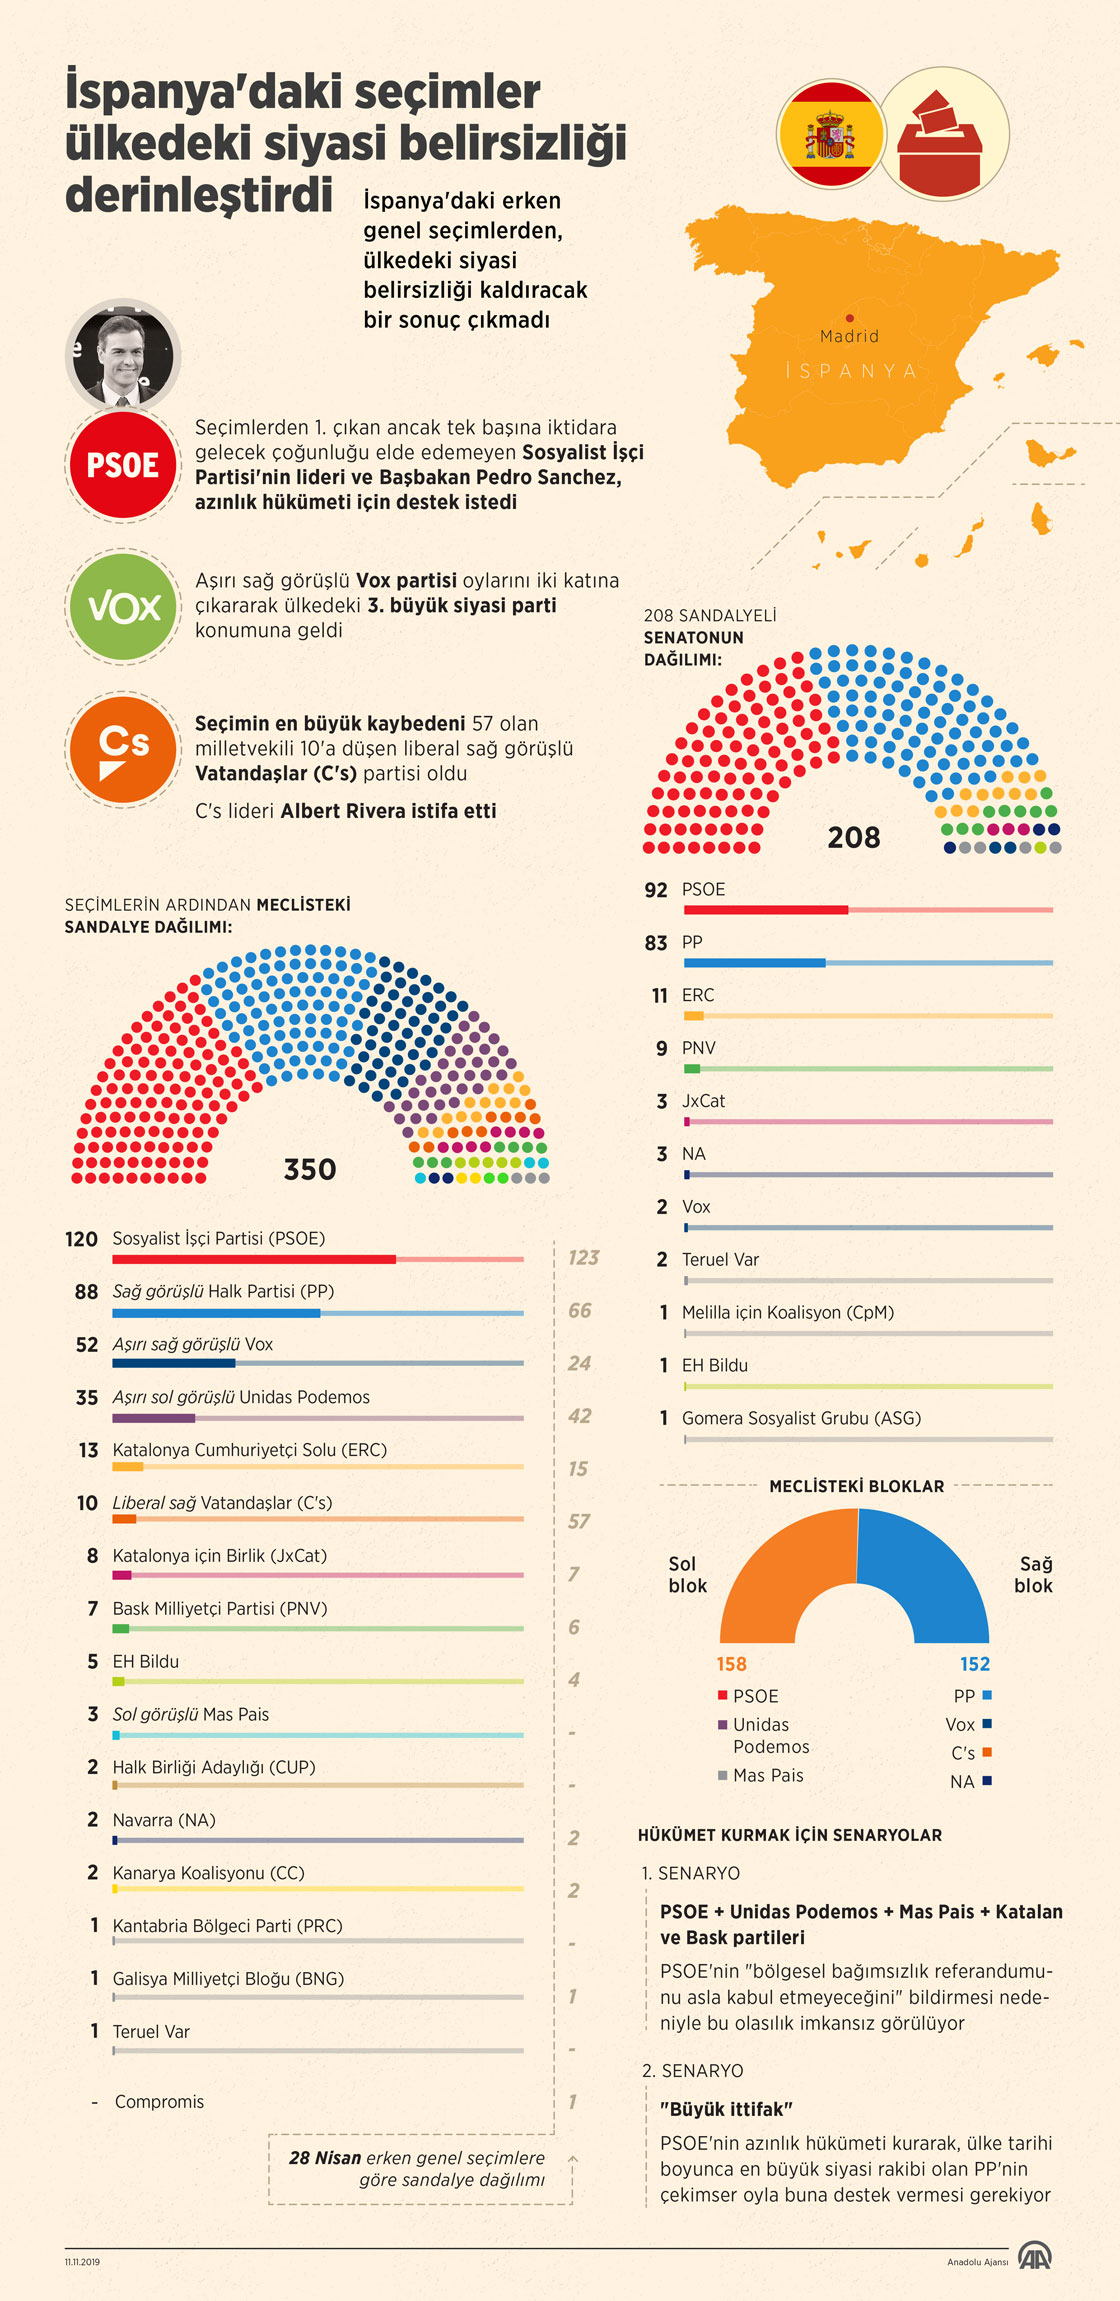 İspanya'daki seçimler ülkedeki siyasi belirsizliği derinleştirdi